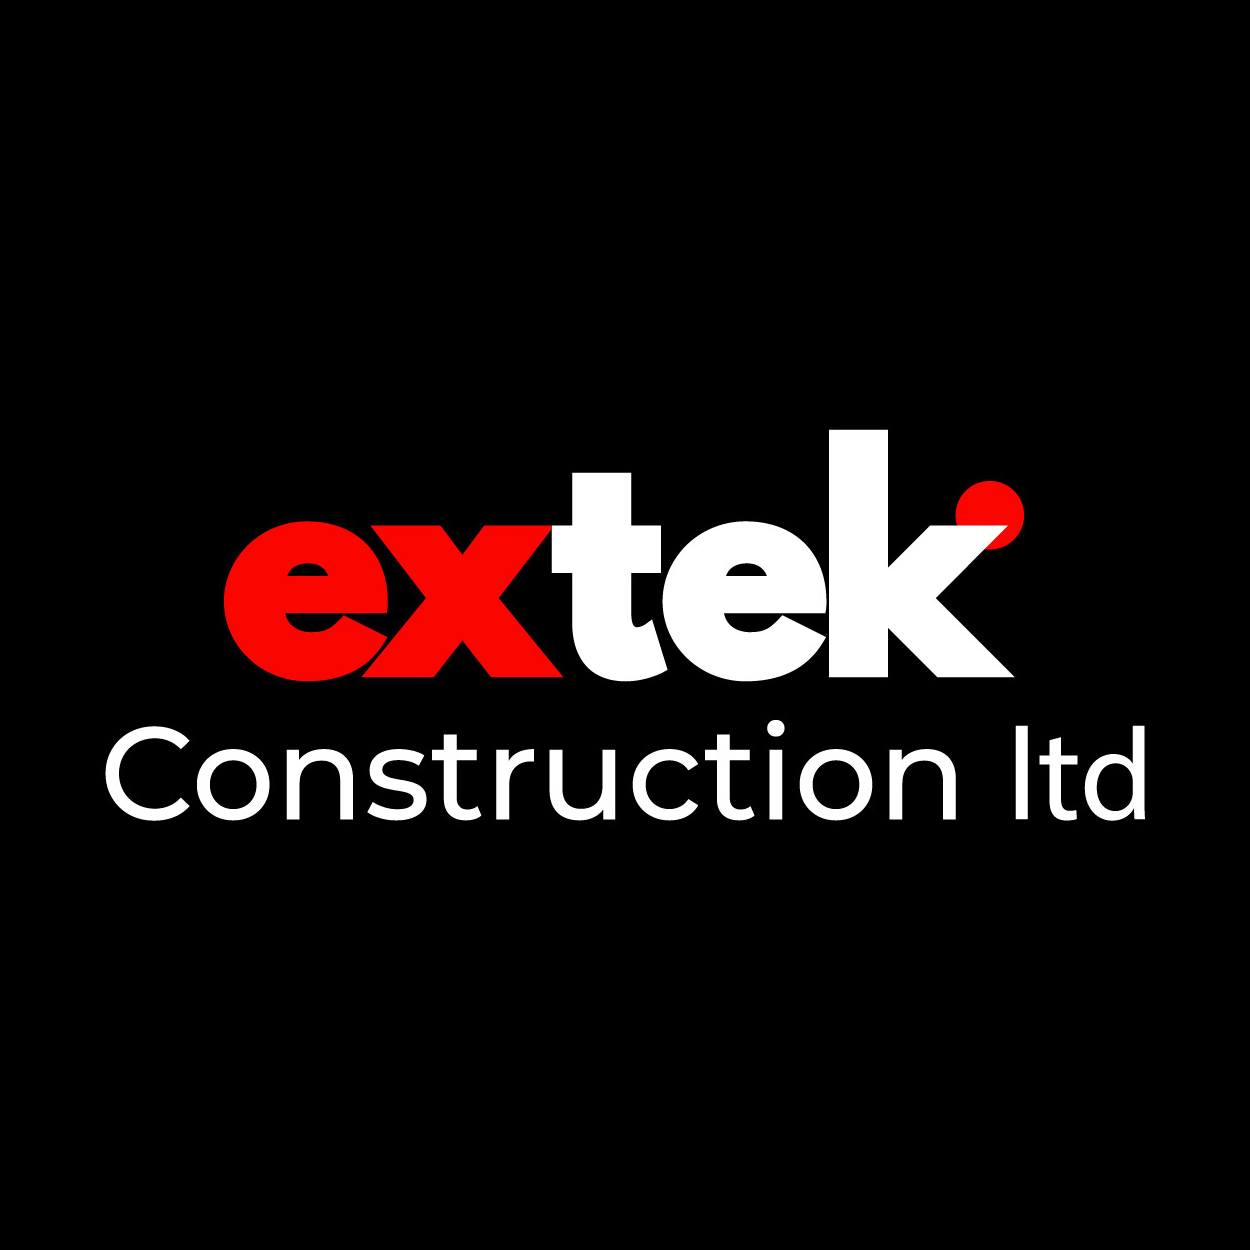 Extek Construction Ltd